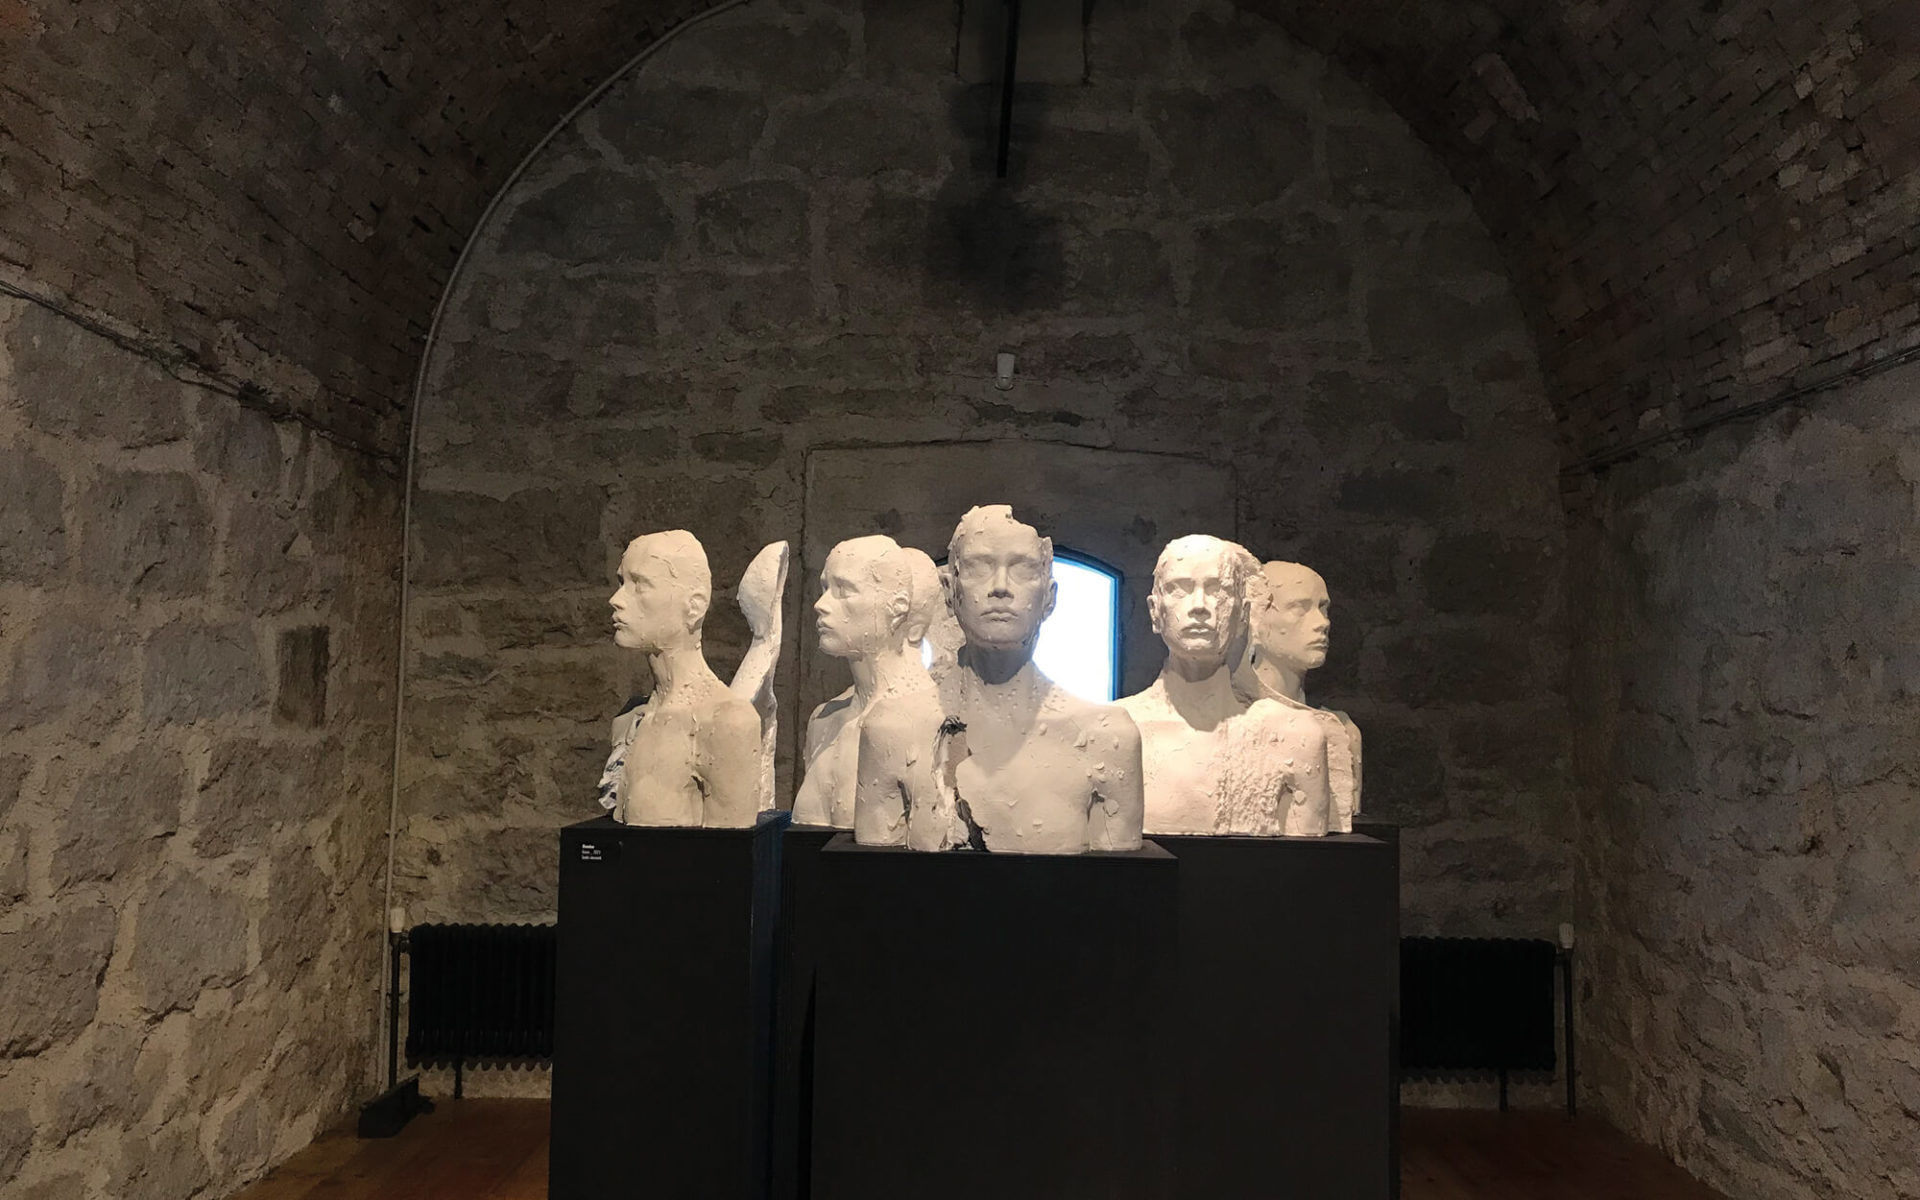 vista frontale dell'opera -Domino-, della scultrice trentina Laura Marcolini, esposta in occasione della mostra Fragile, presso il Forte superiore di Nago, nel 2021. Tredici elementi in gesso su colonne grigie.